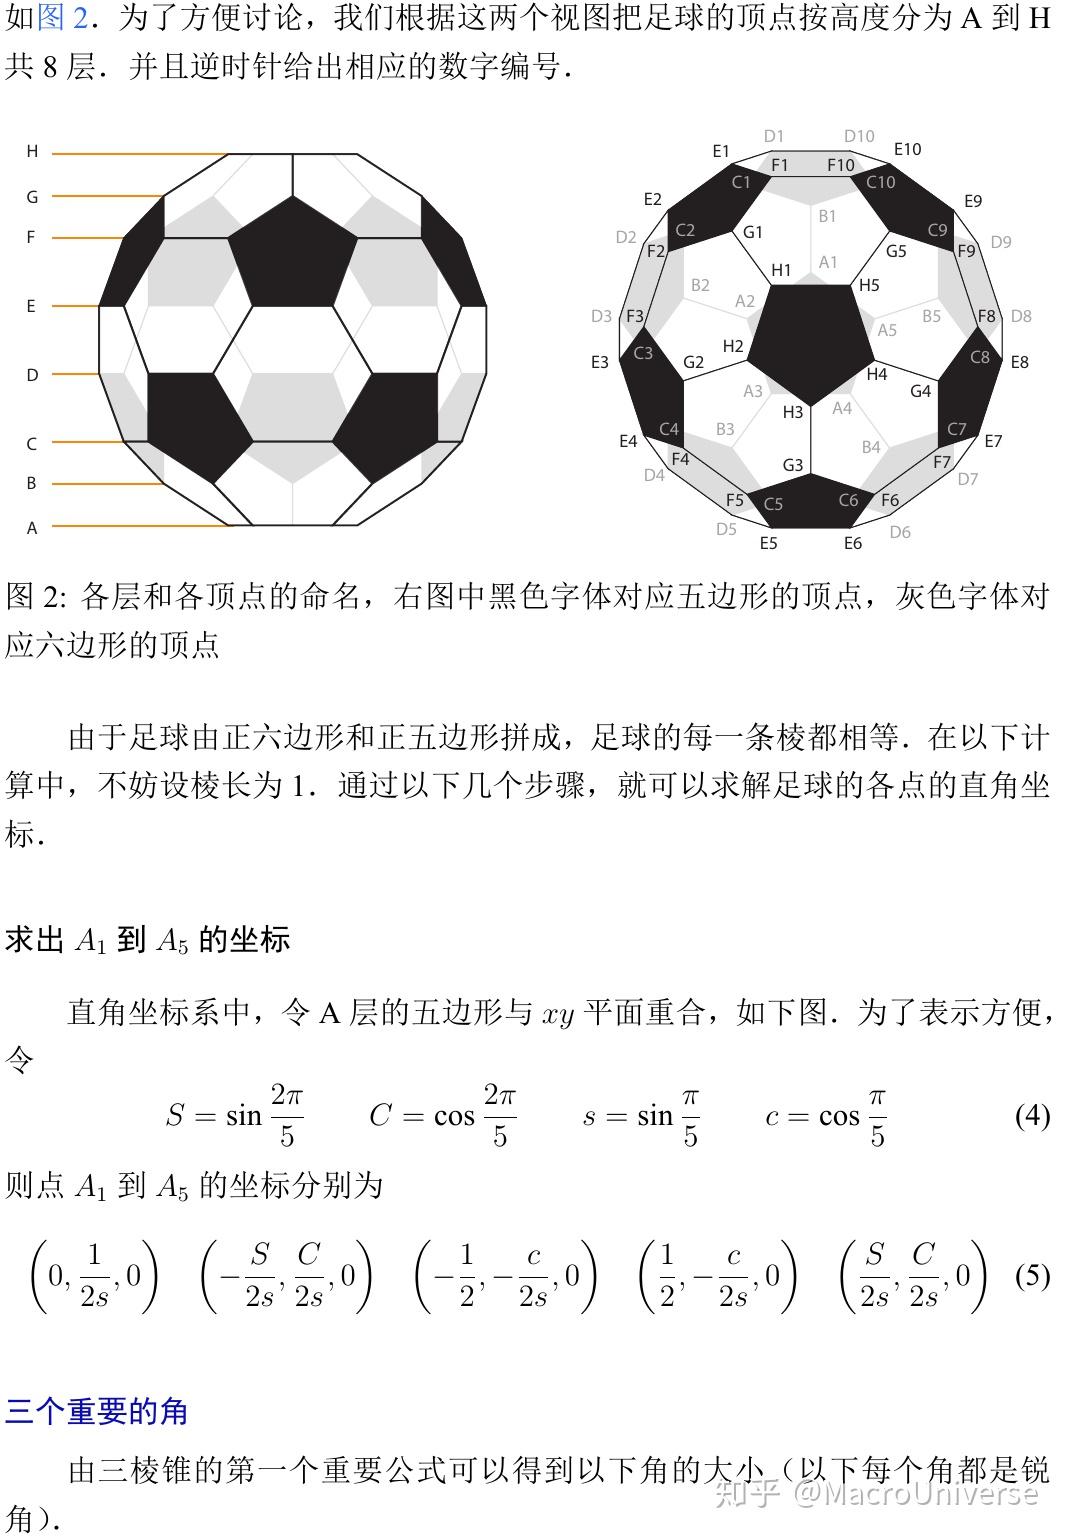 足球各个多边形顶点坐标计算公式是什么?